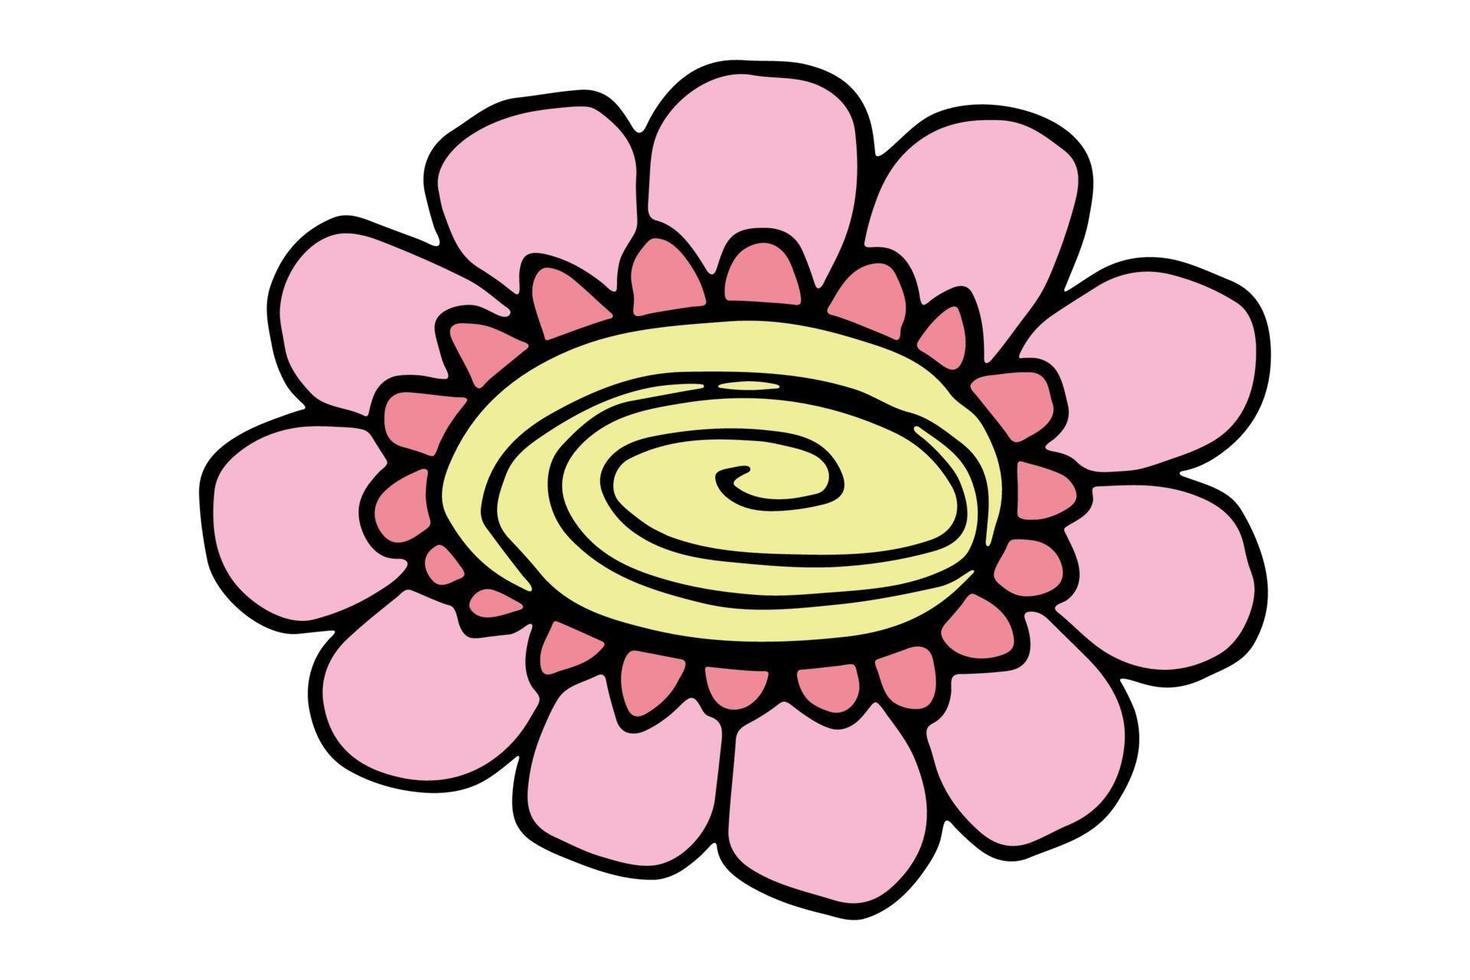 gemakkelijk bloem clip art. hand- getrokken bloemen tekening. voor afdrukken, web, ontwerp, decor, logo vector